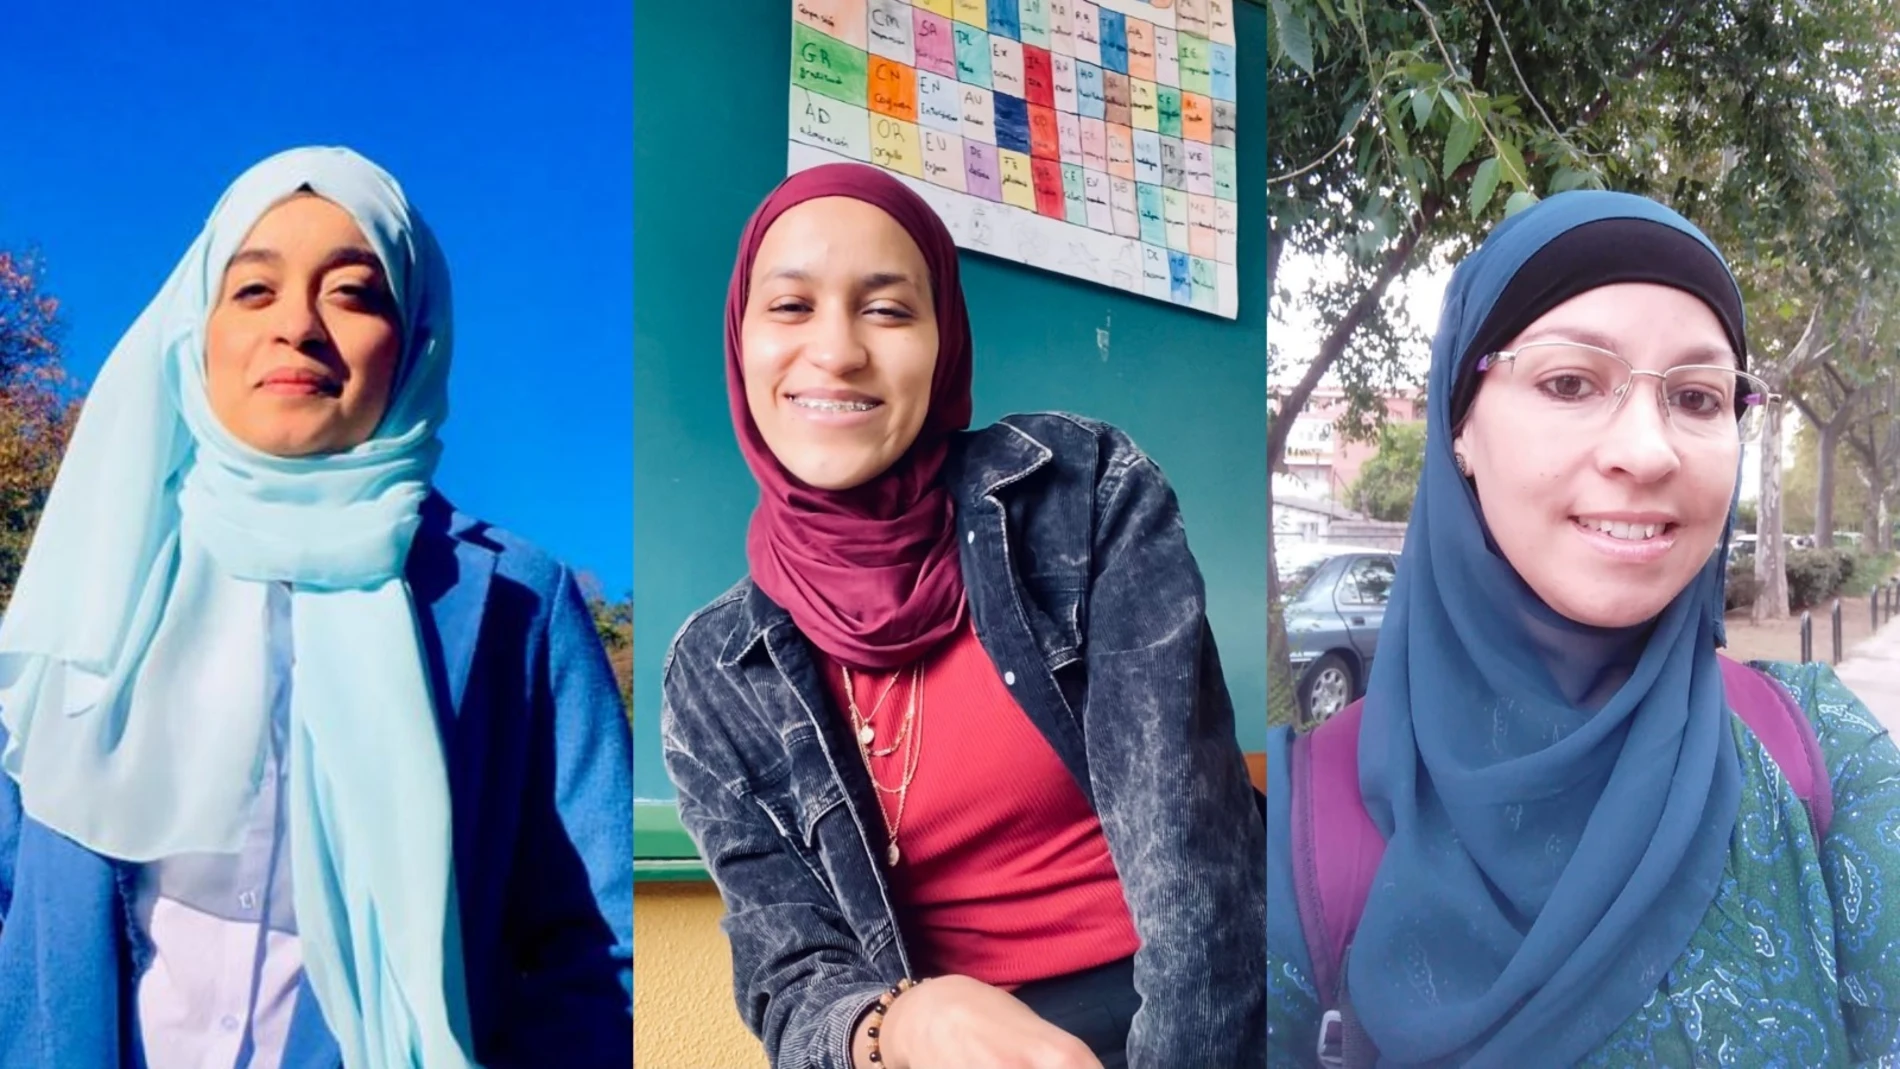 De izquierda a derecha: Hind Mounjid, Khaoula El Kamouni Chebli y Carolina Saidi Rodríguez, tres maestras españolas en la educación pública que visten hiyab.